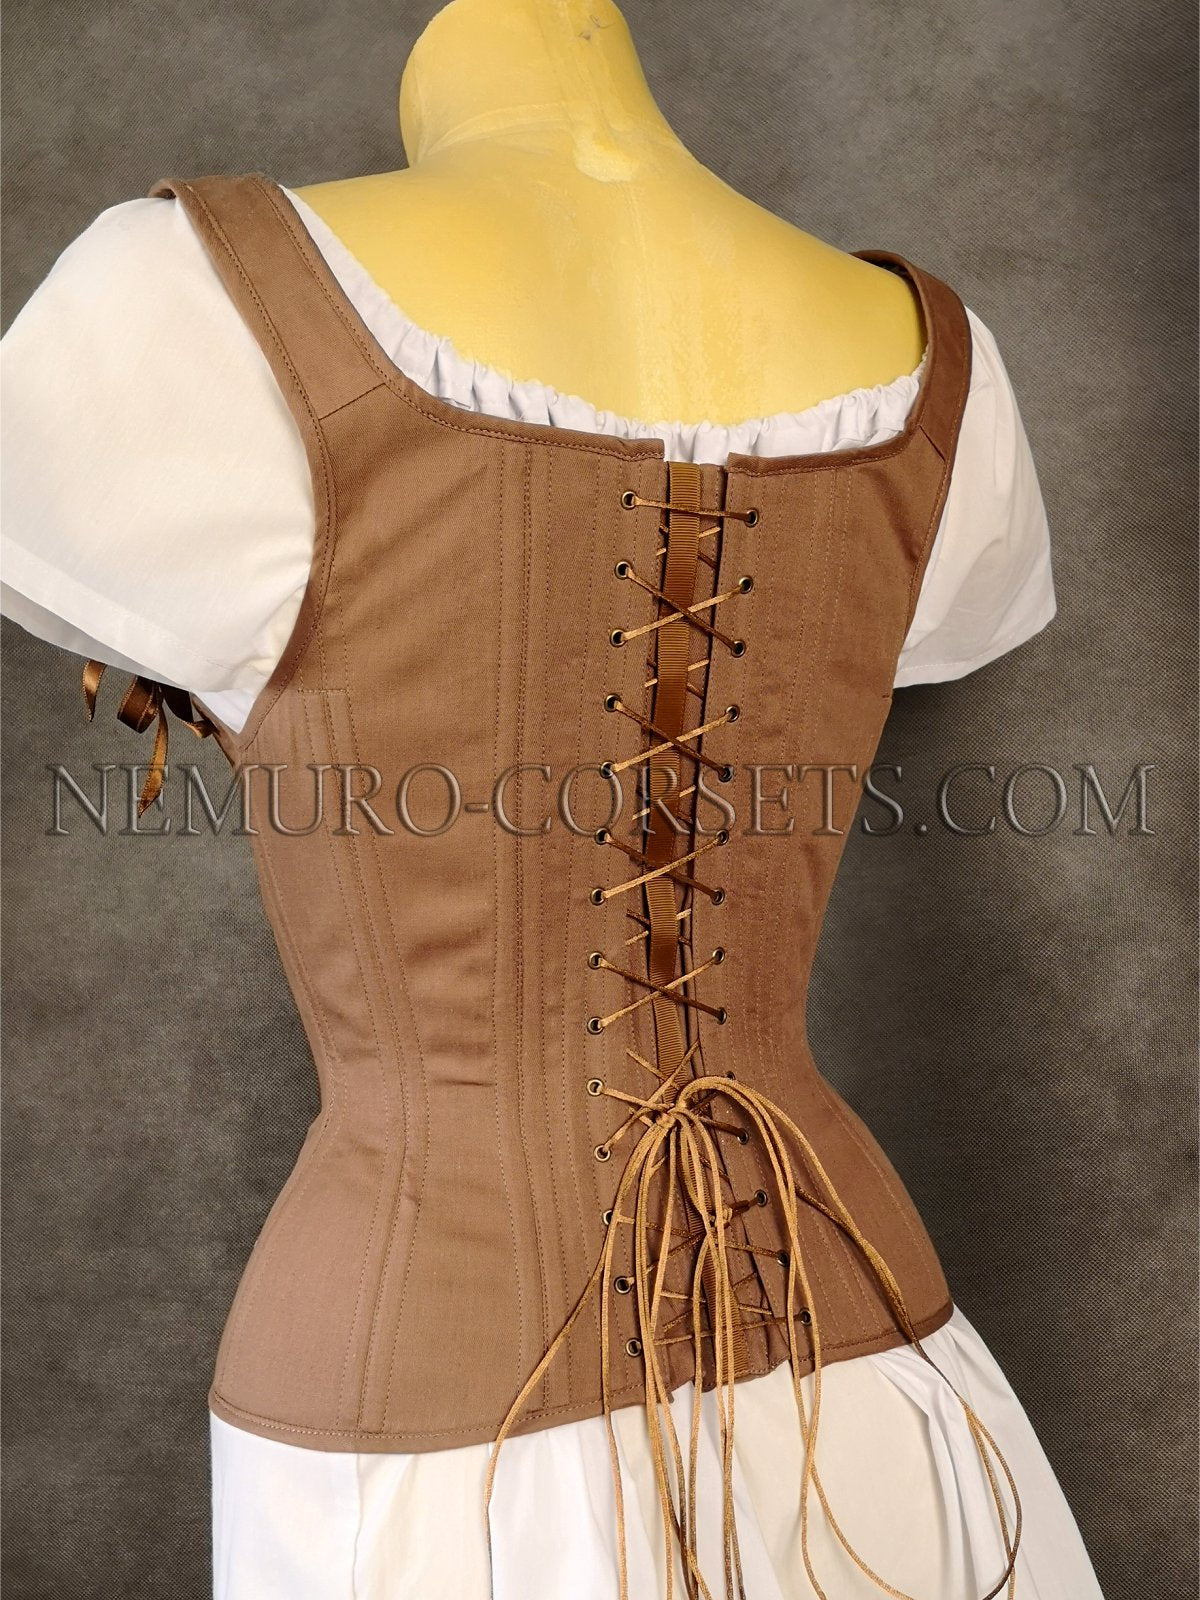 https://nemuro-corsets.com/cdn/shop/products/IMG_20211005_135605_1024x1024@2x.jpg?v=1633432714